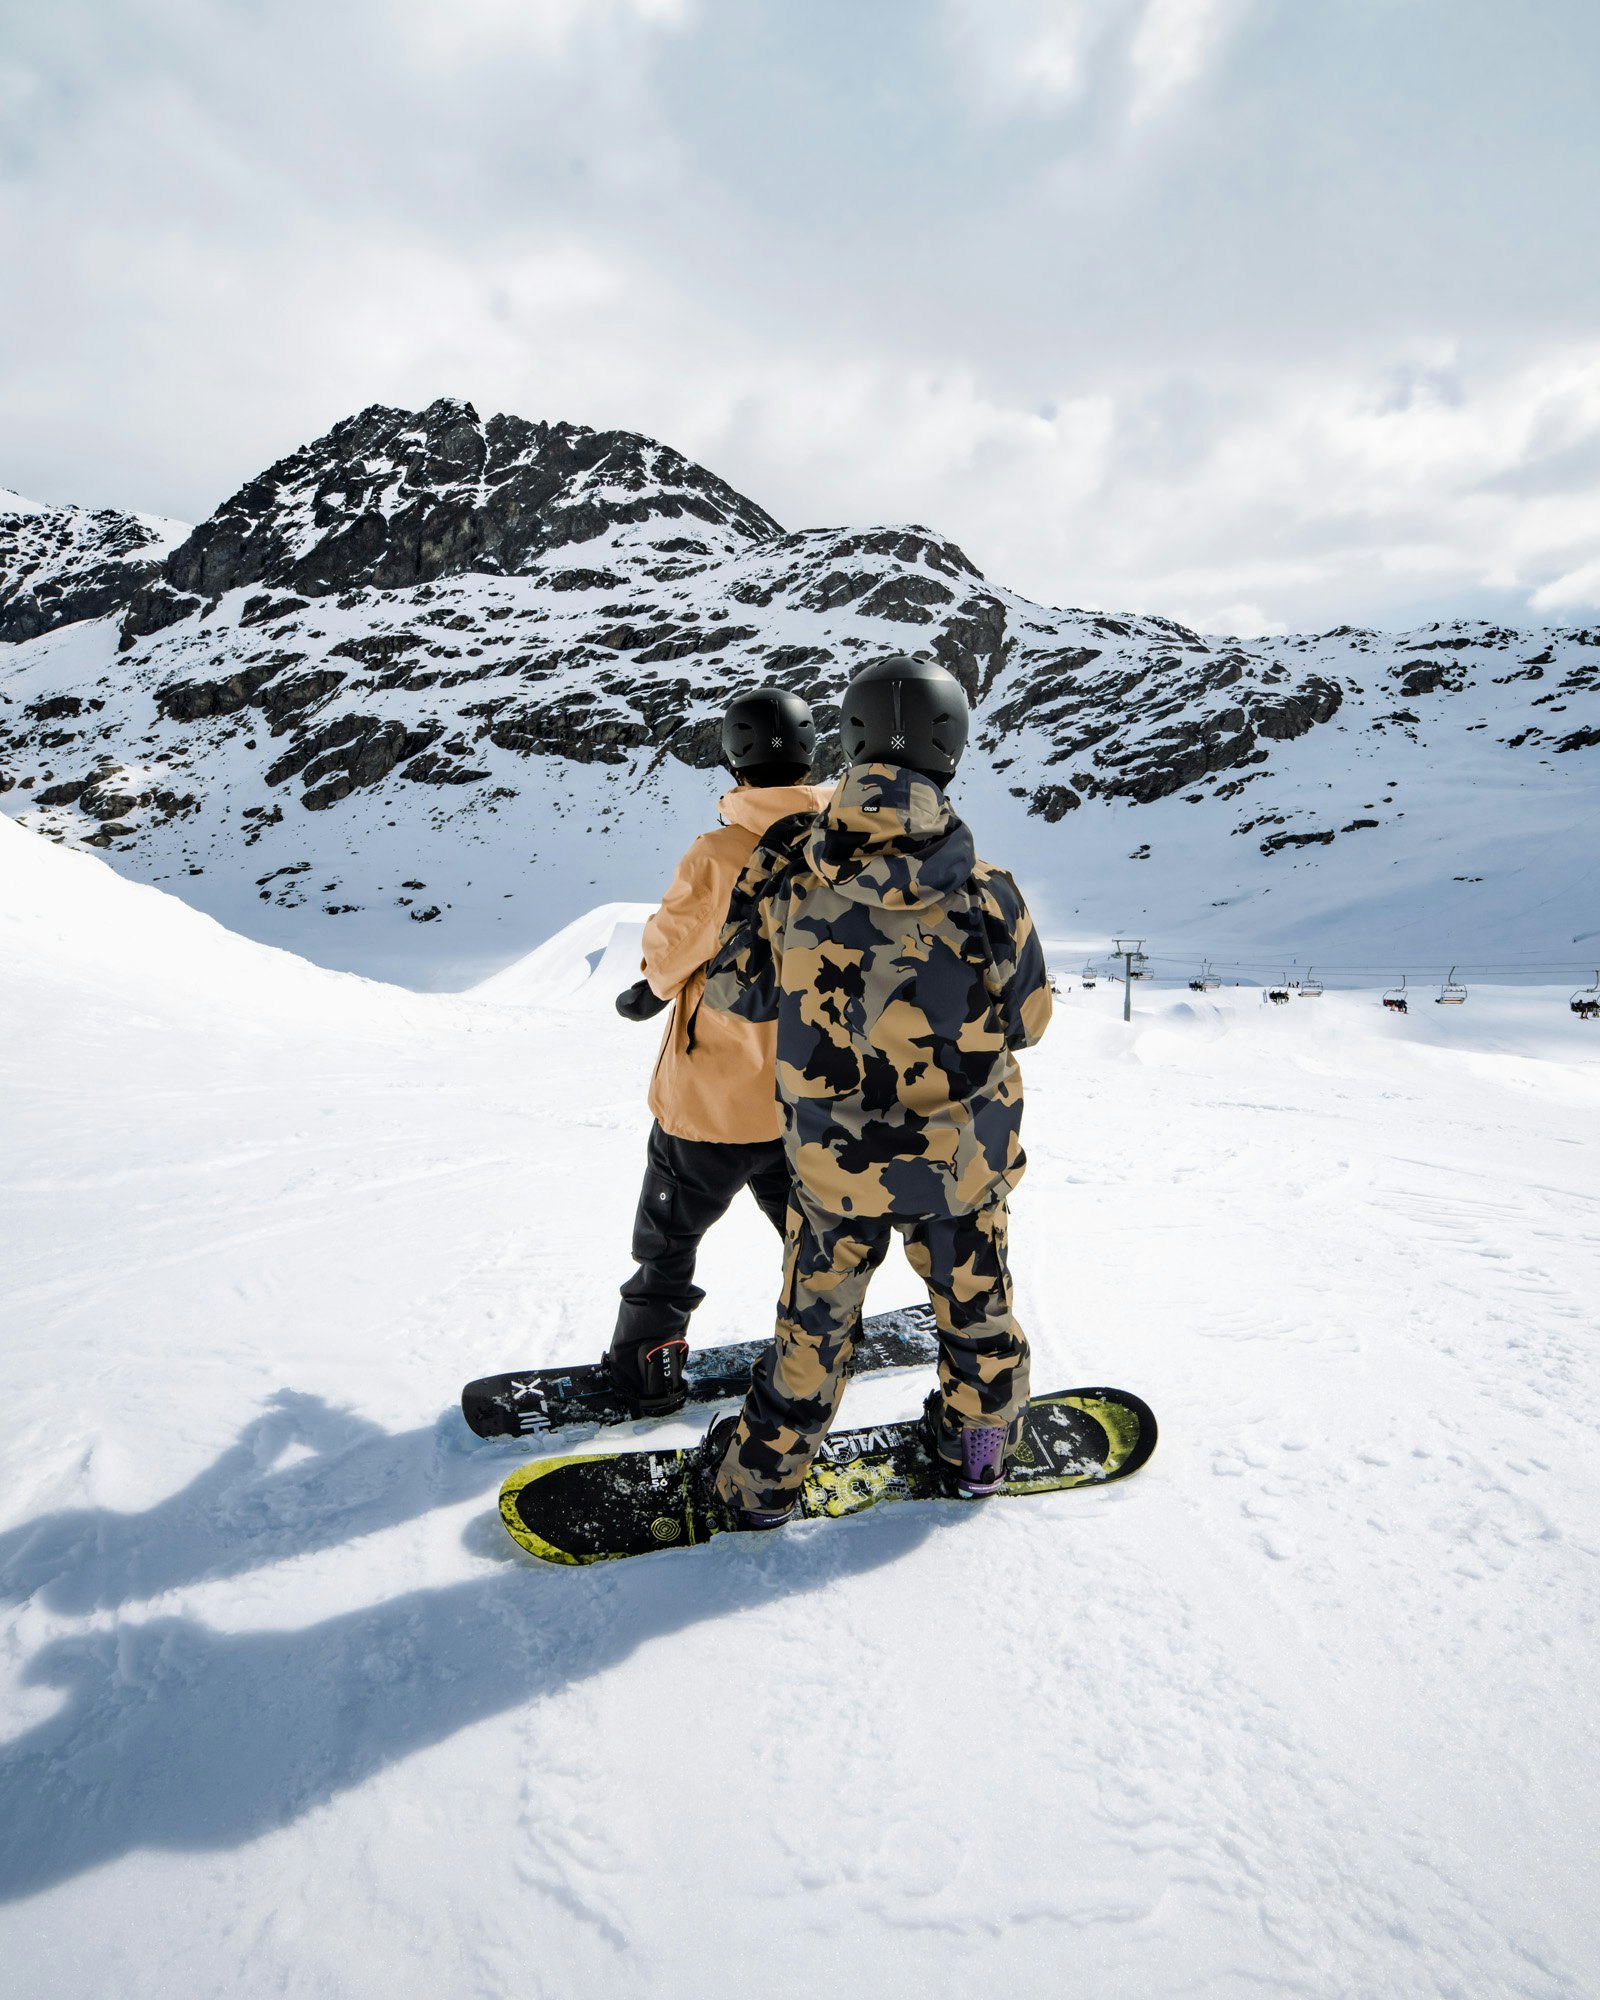 Protezioni Snowboard - Tutto per la tua Sicurezza sul Snowboard